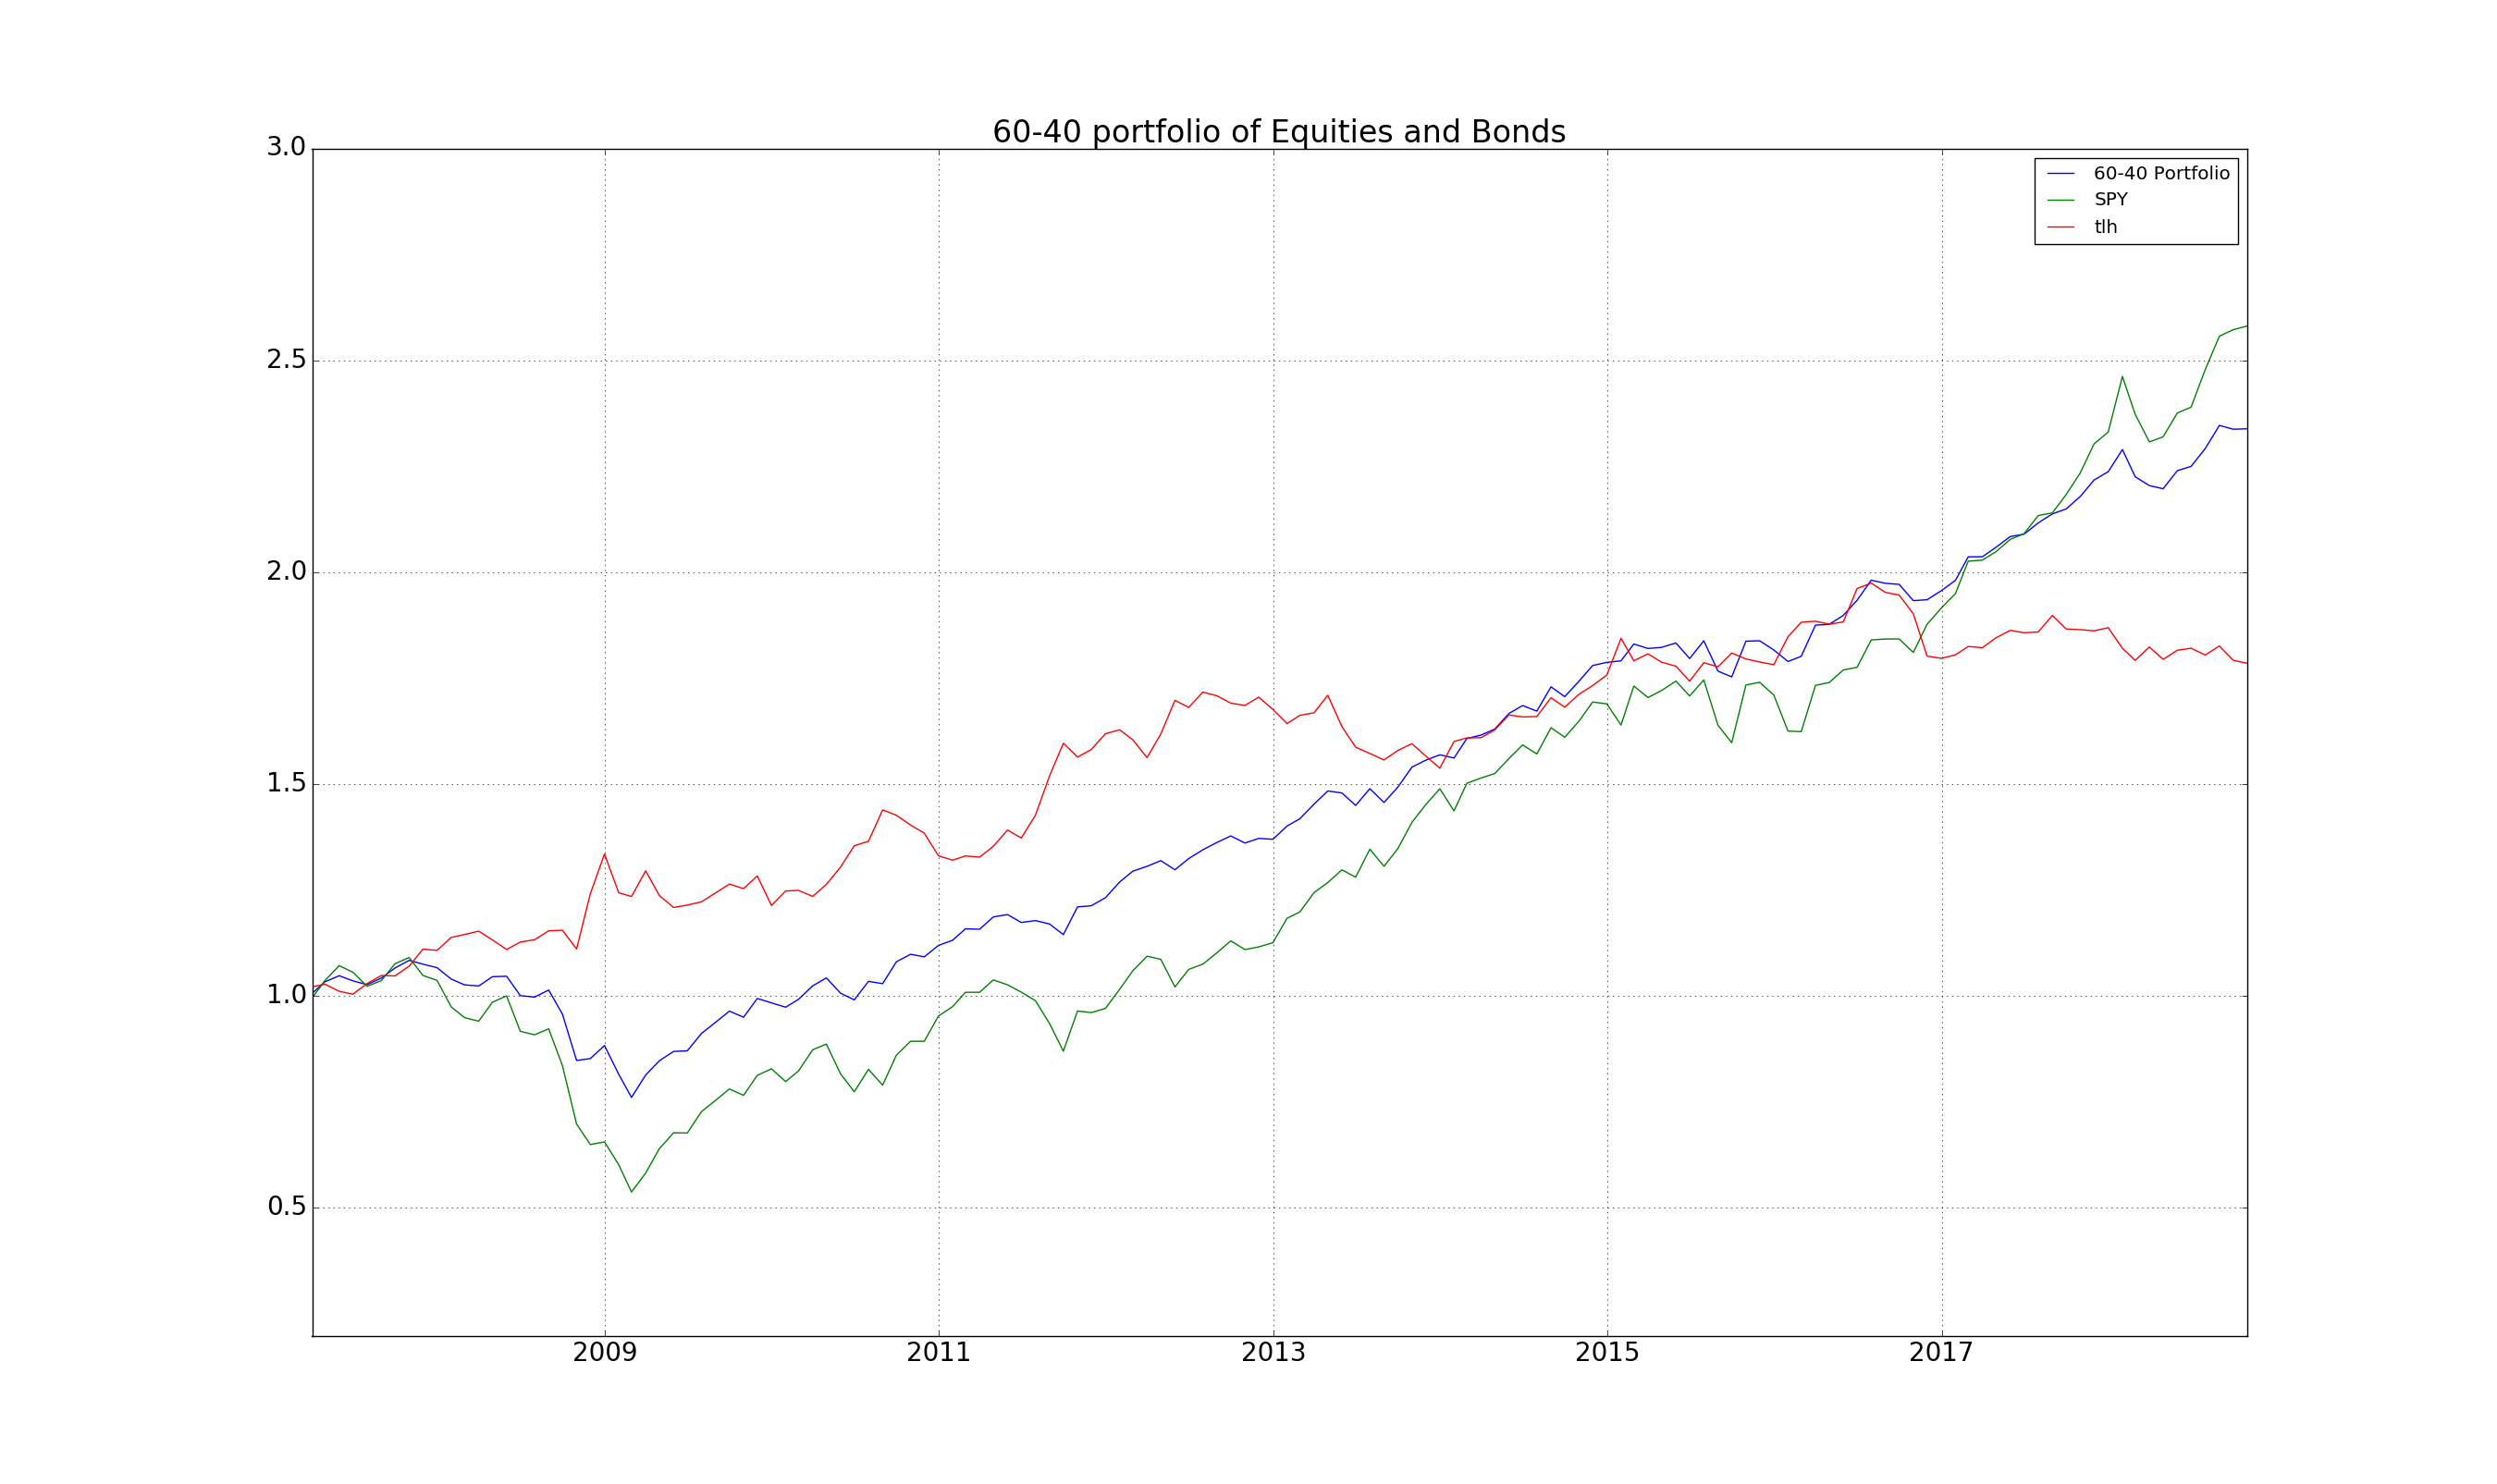 60-40 Equity Bond Portfolio since 2008